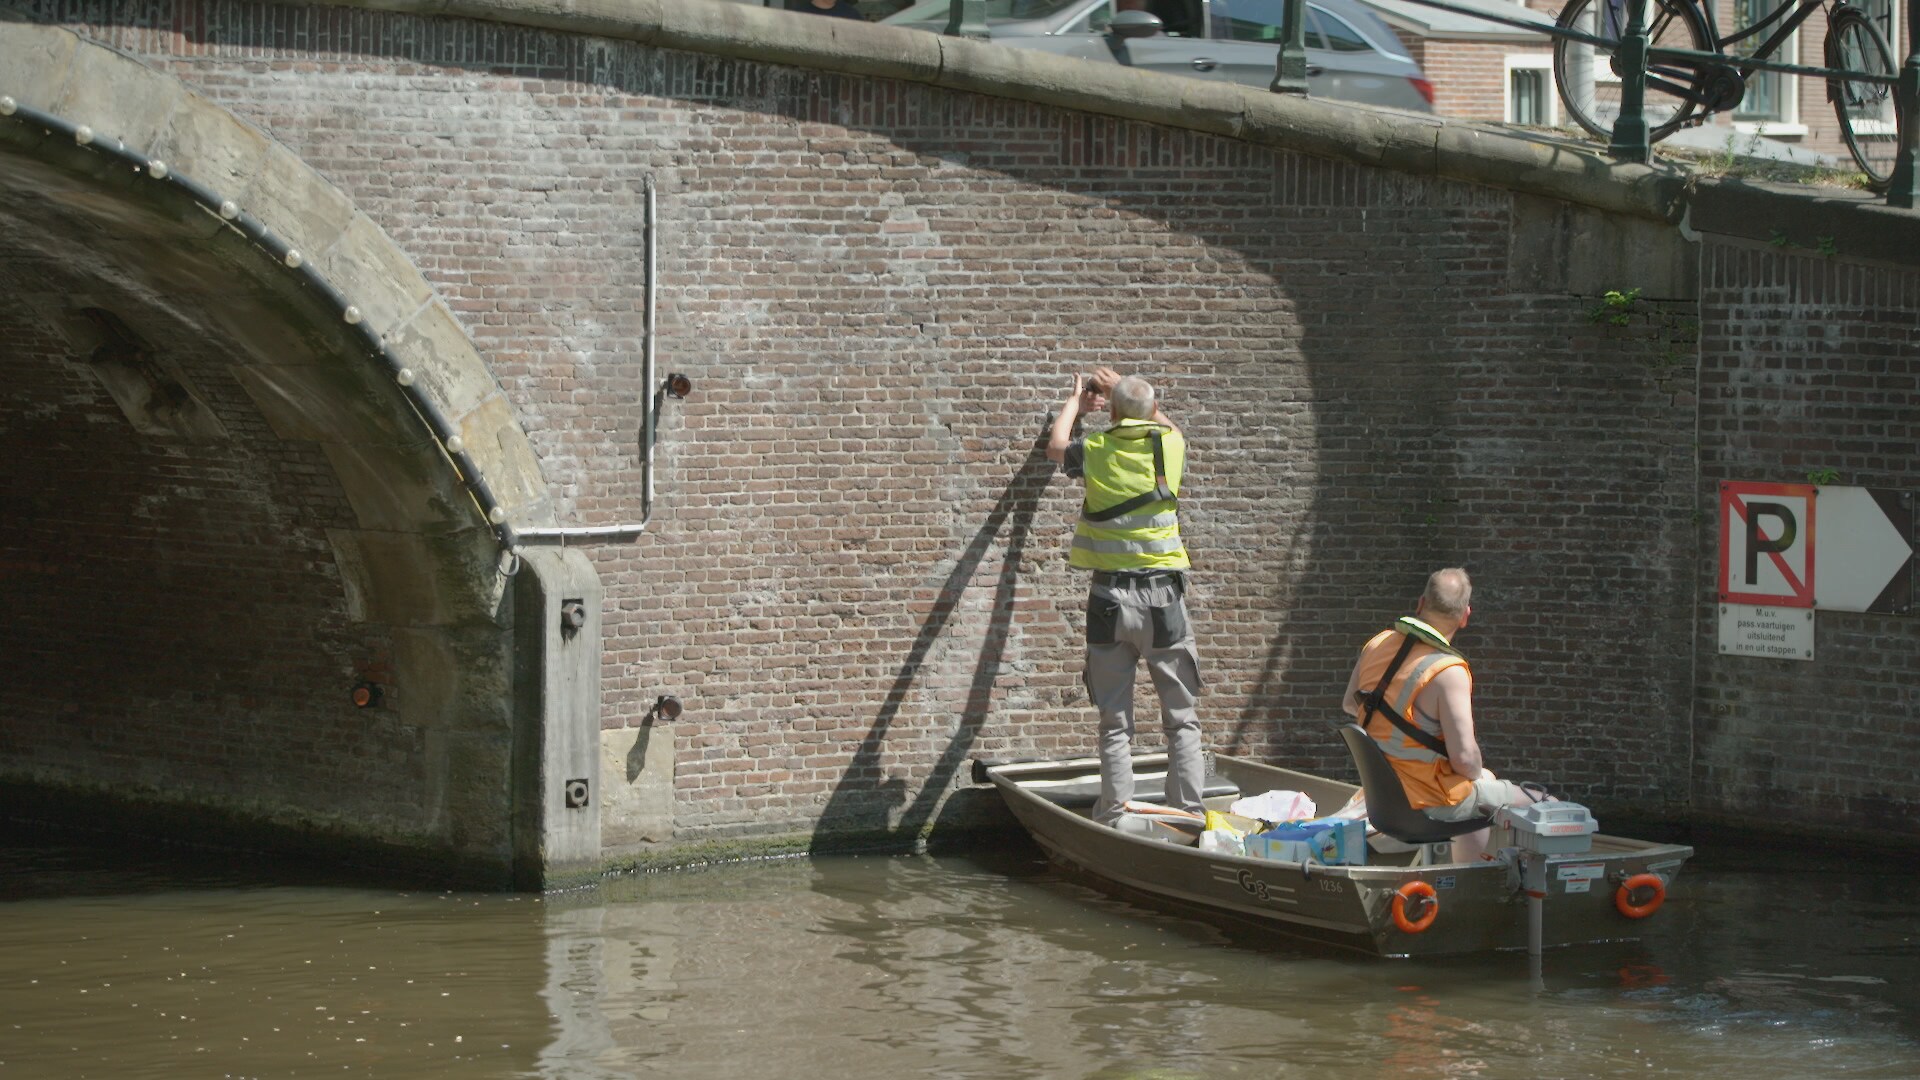 Documentaire toont – met iets te veel clichés – hoe groot Amsterdams probleem van bruggen en kades is